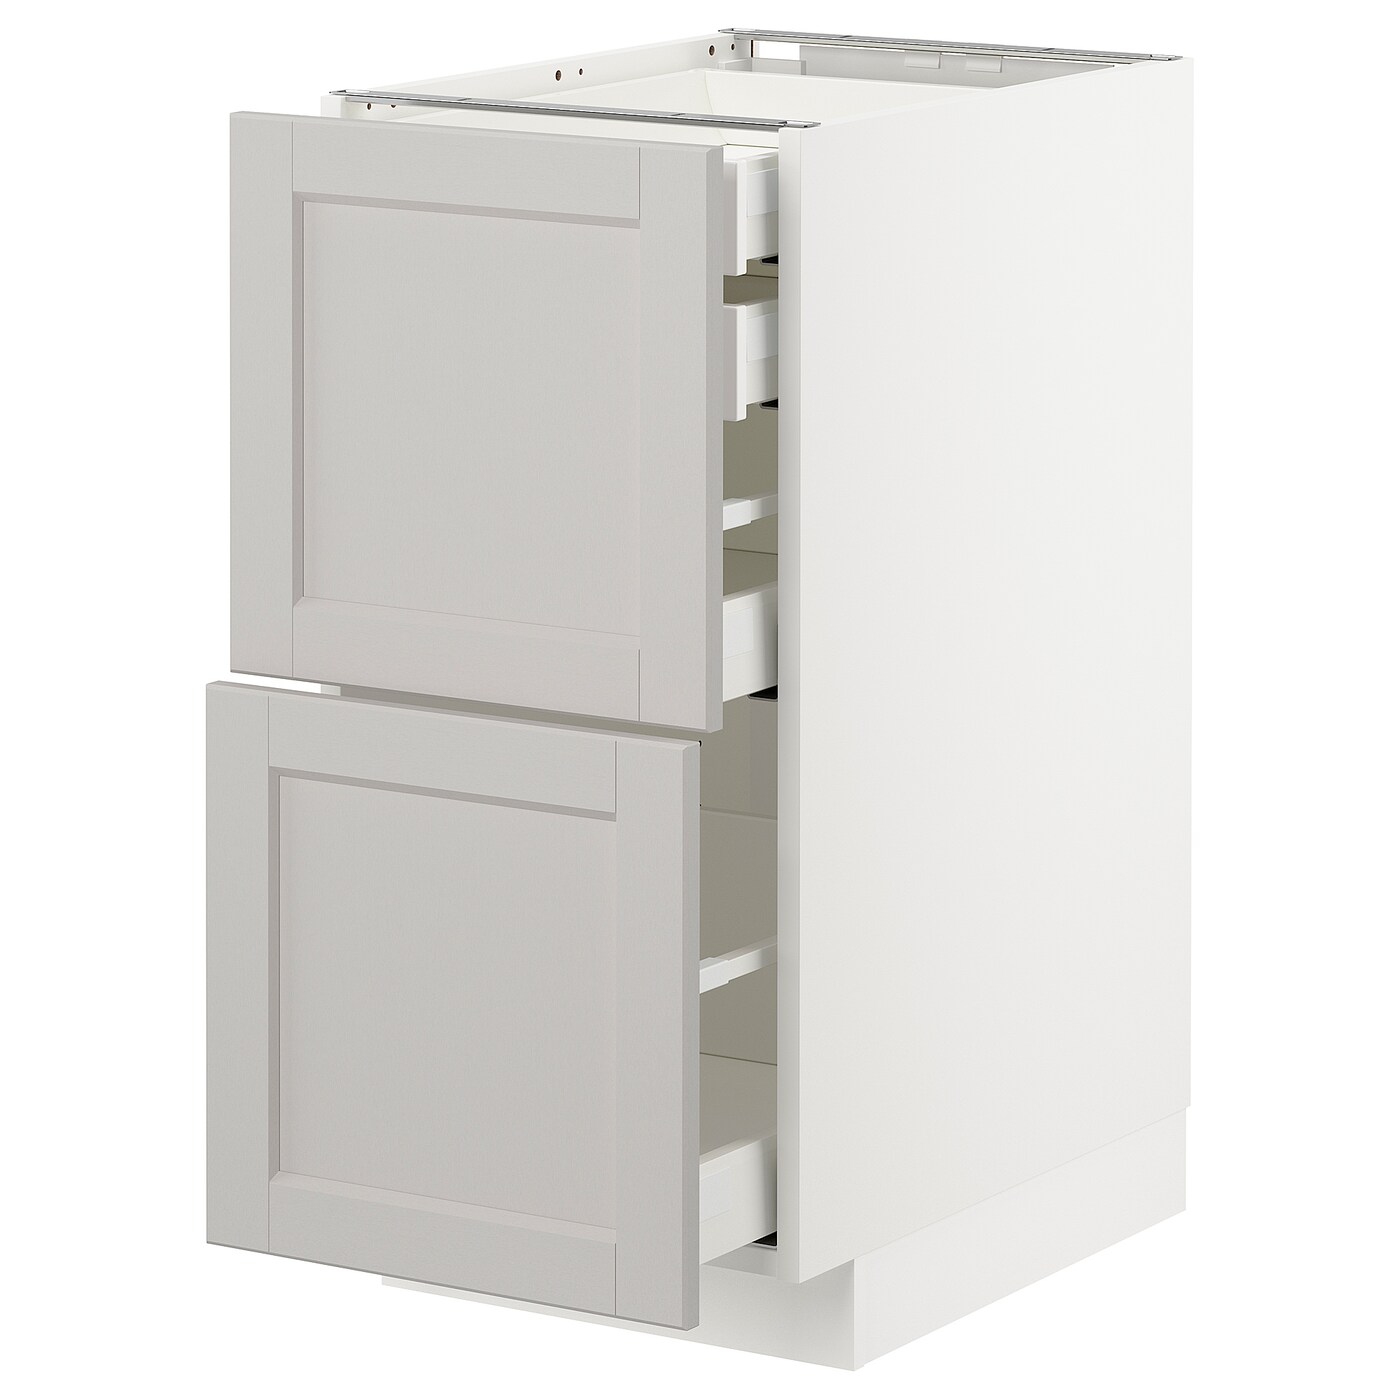 Напольный шкаф  - IKEA METOD MAXIMERA, 88x61,9x40см, белый/светло-серый, МЕТОД МАКСИМЕРА ИКЕА